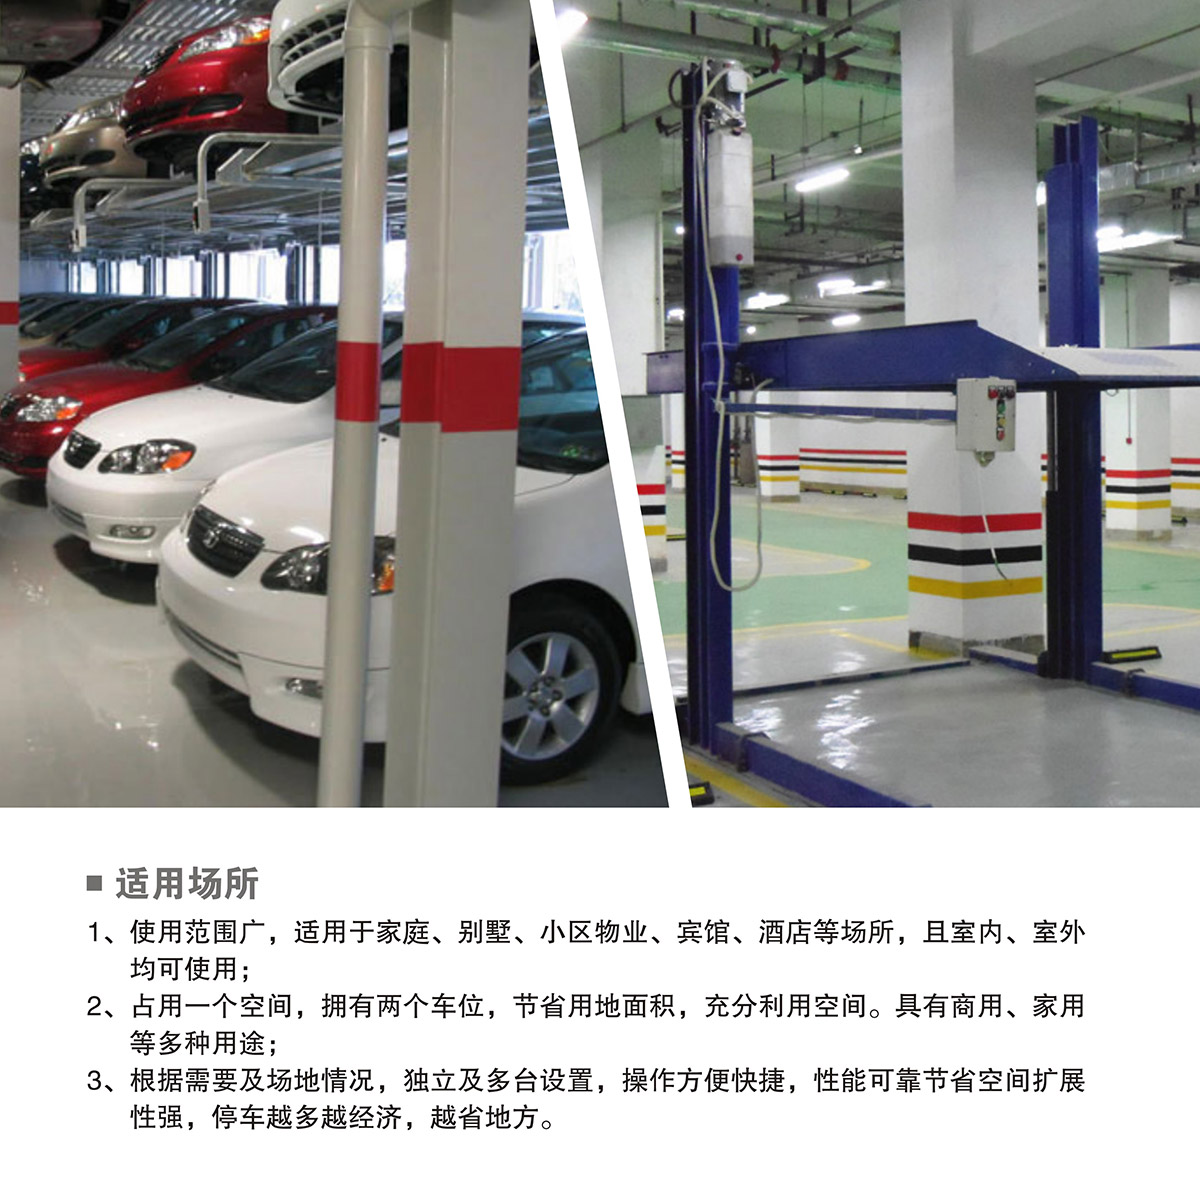 重庆PJS两柱简易升降立体停车设备适用场所.jpg